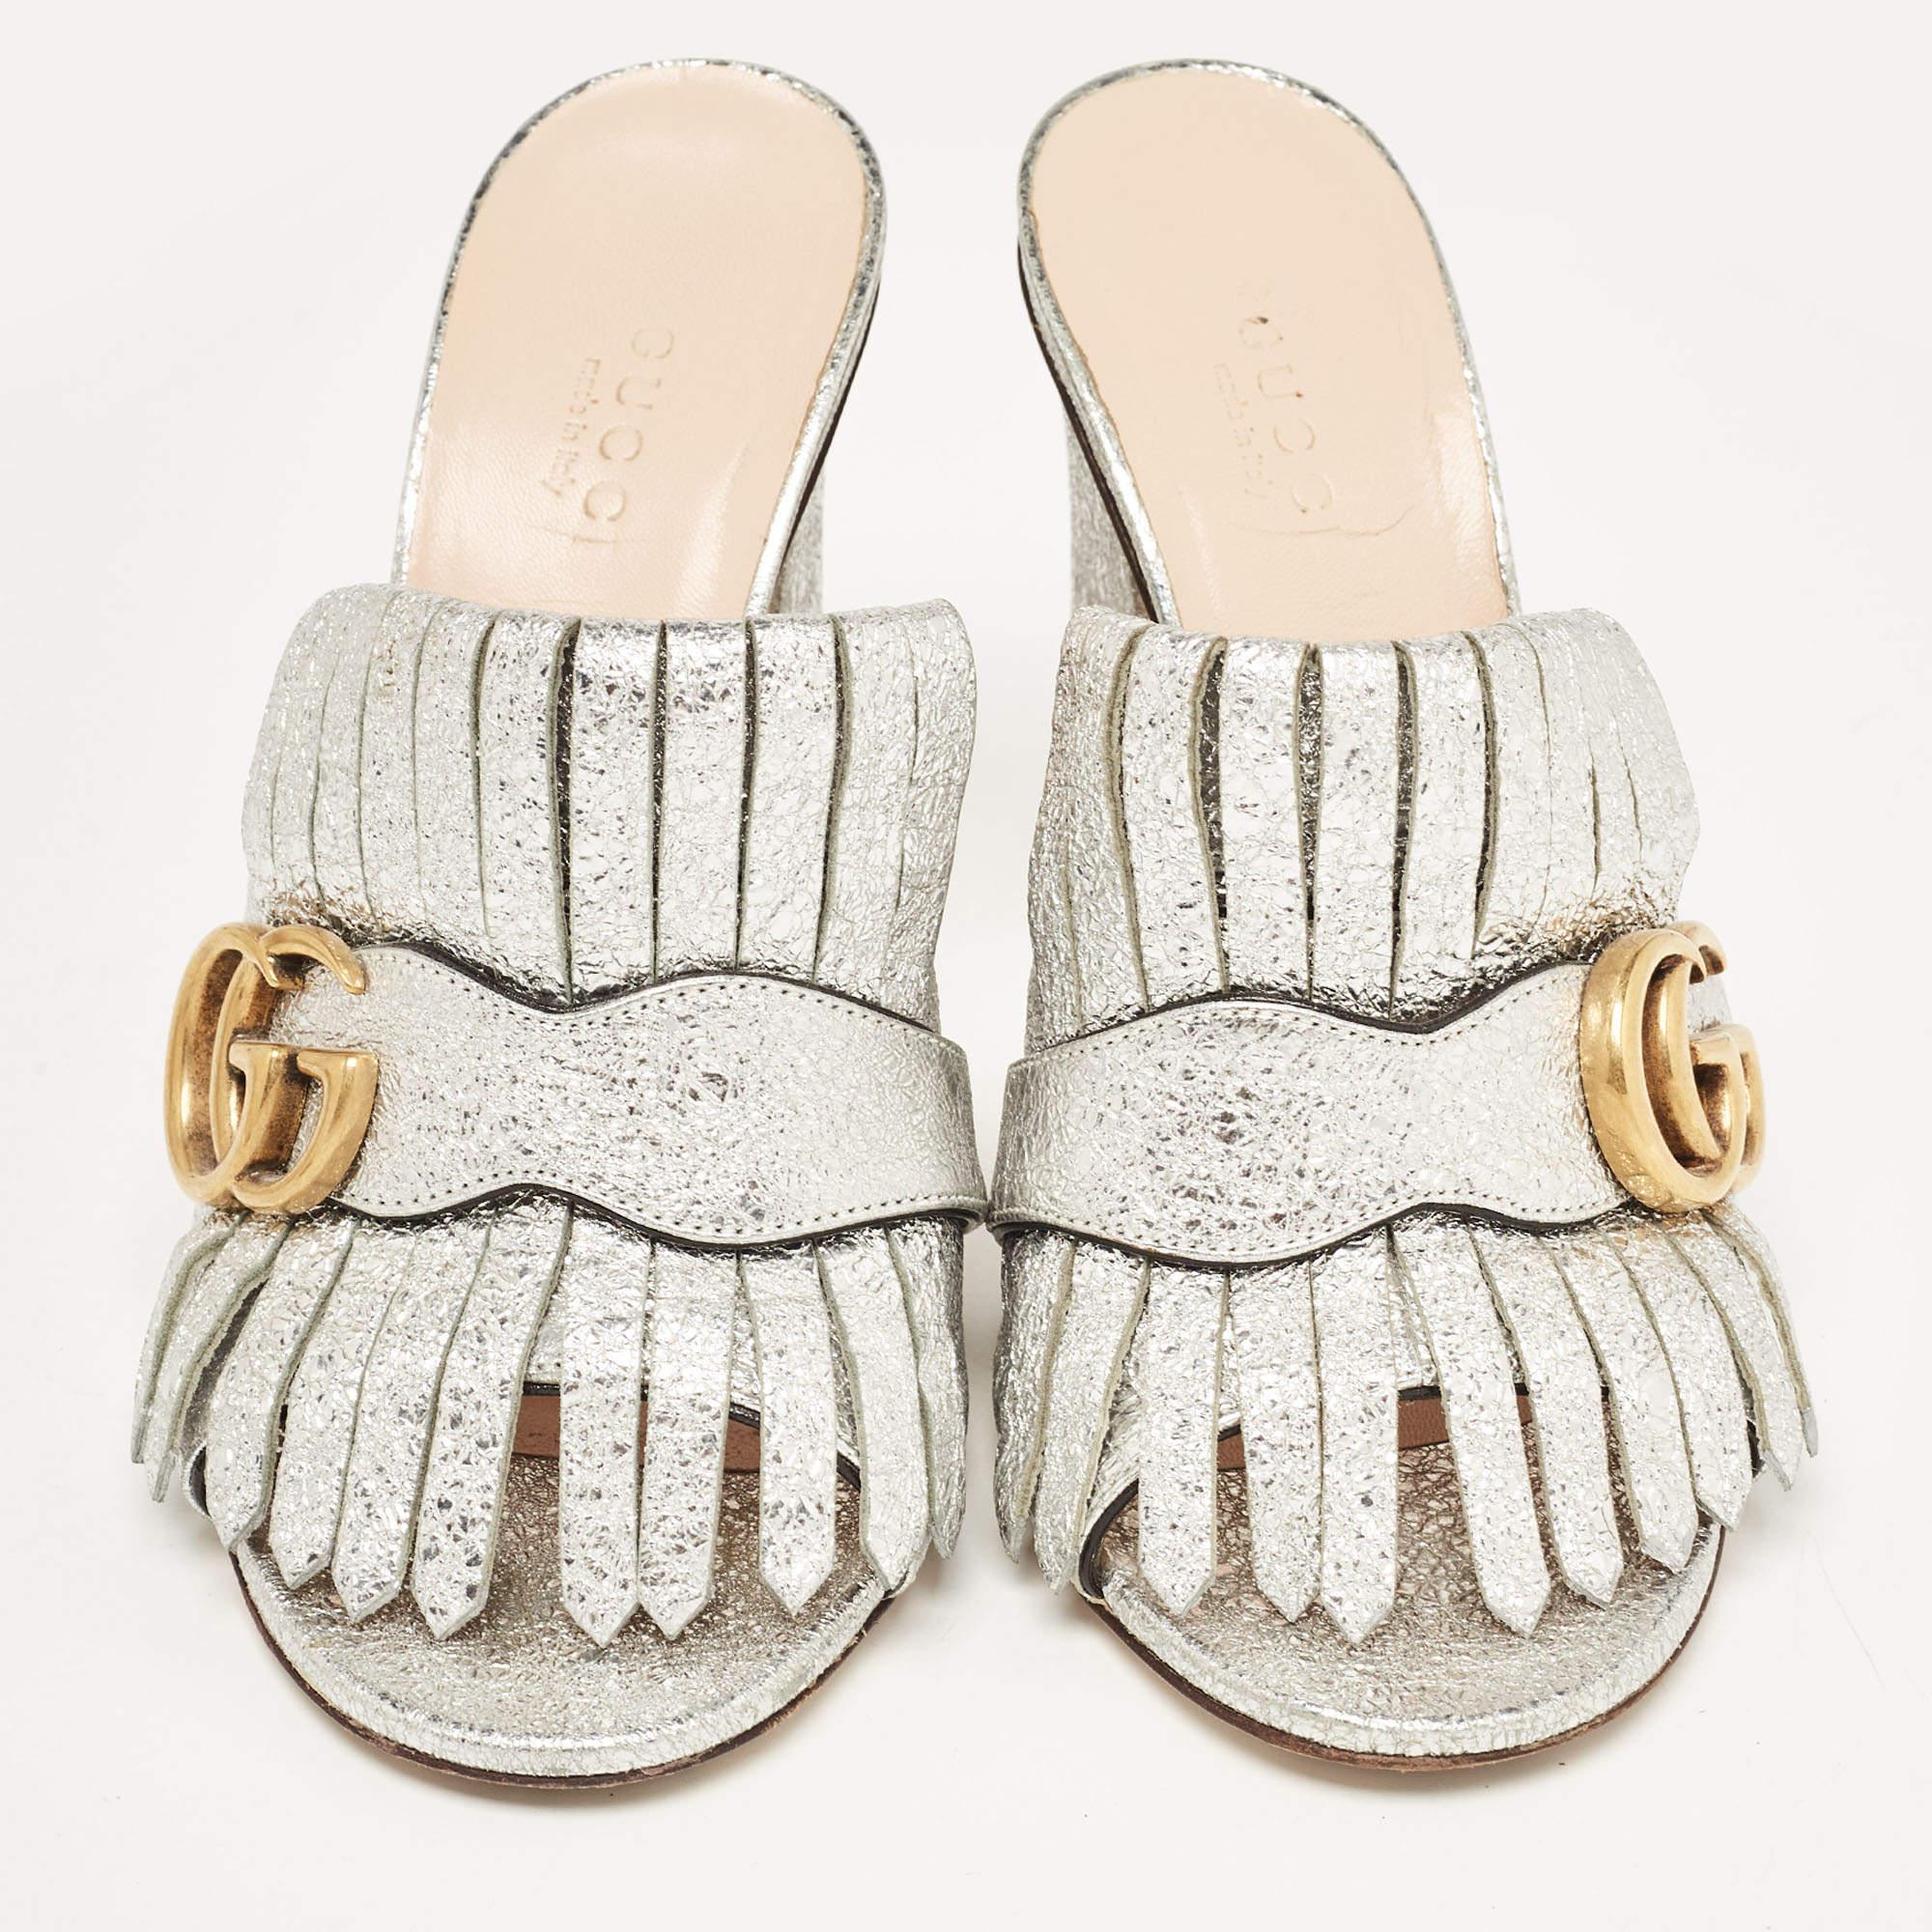 Gucci nous présente une création impeccable qui fera ressortir votre style. Ces sandales GG Marmont de Gucci sont réalisées en cuir craquelé argenté, agrémentées de franges et d'un motif GG doré sur l'empeigne. Ils sont complétés par des chaussures